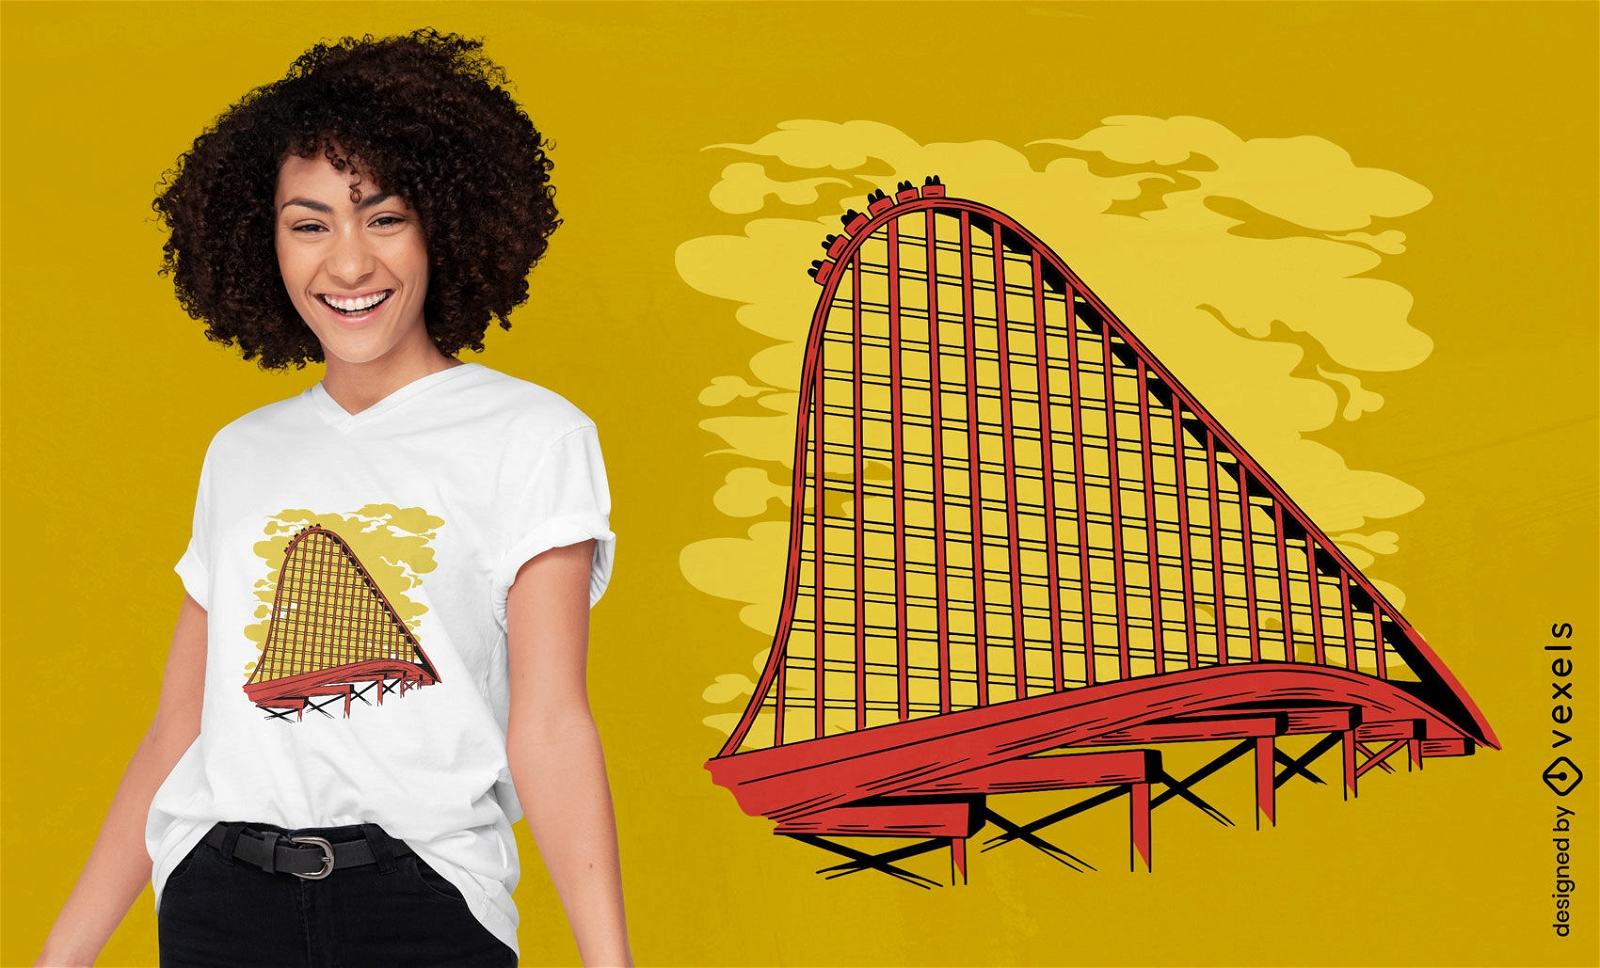 Wooden roller coaster t-shirt design